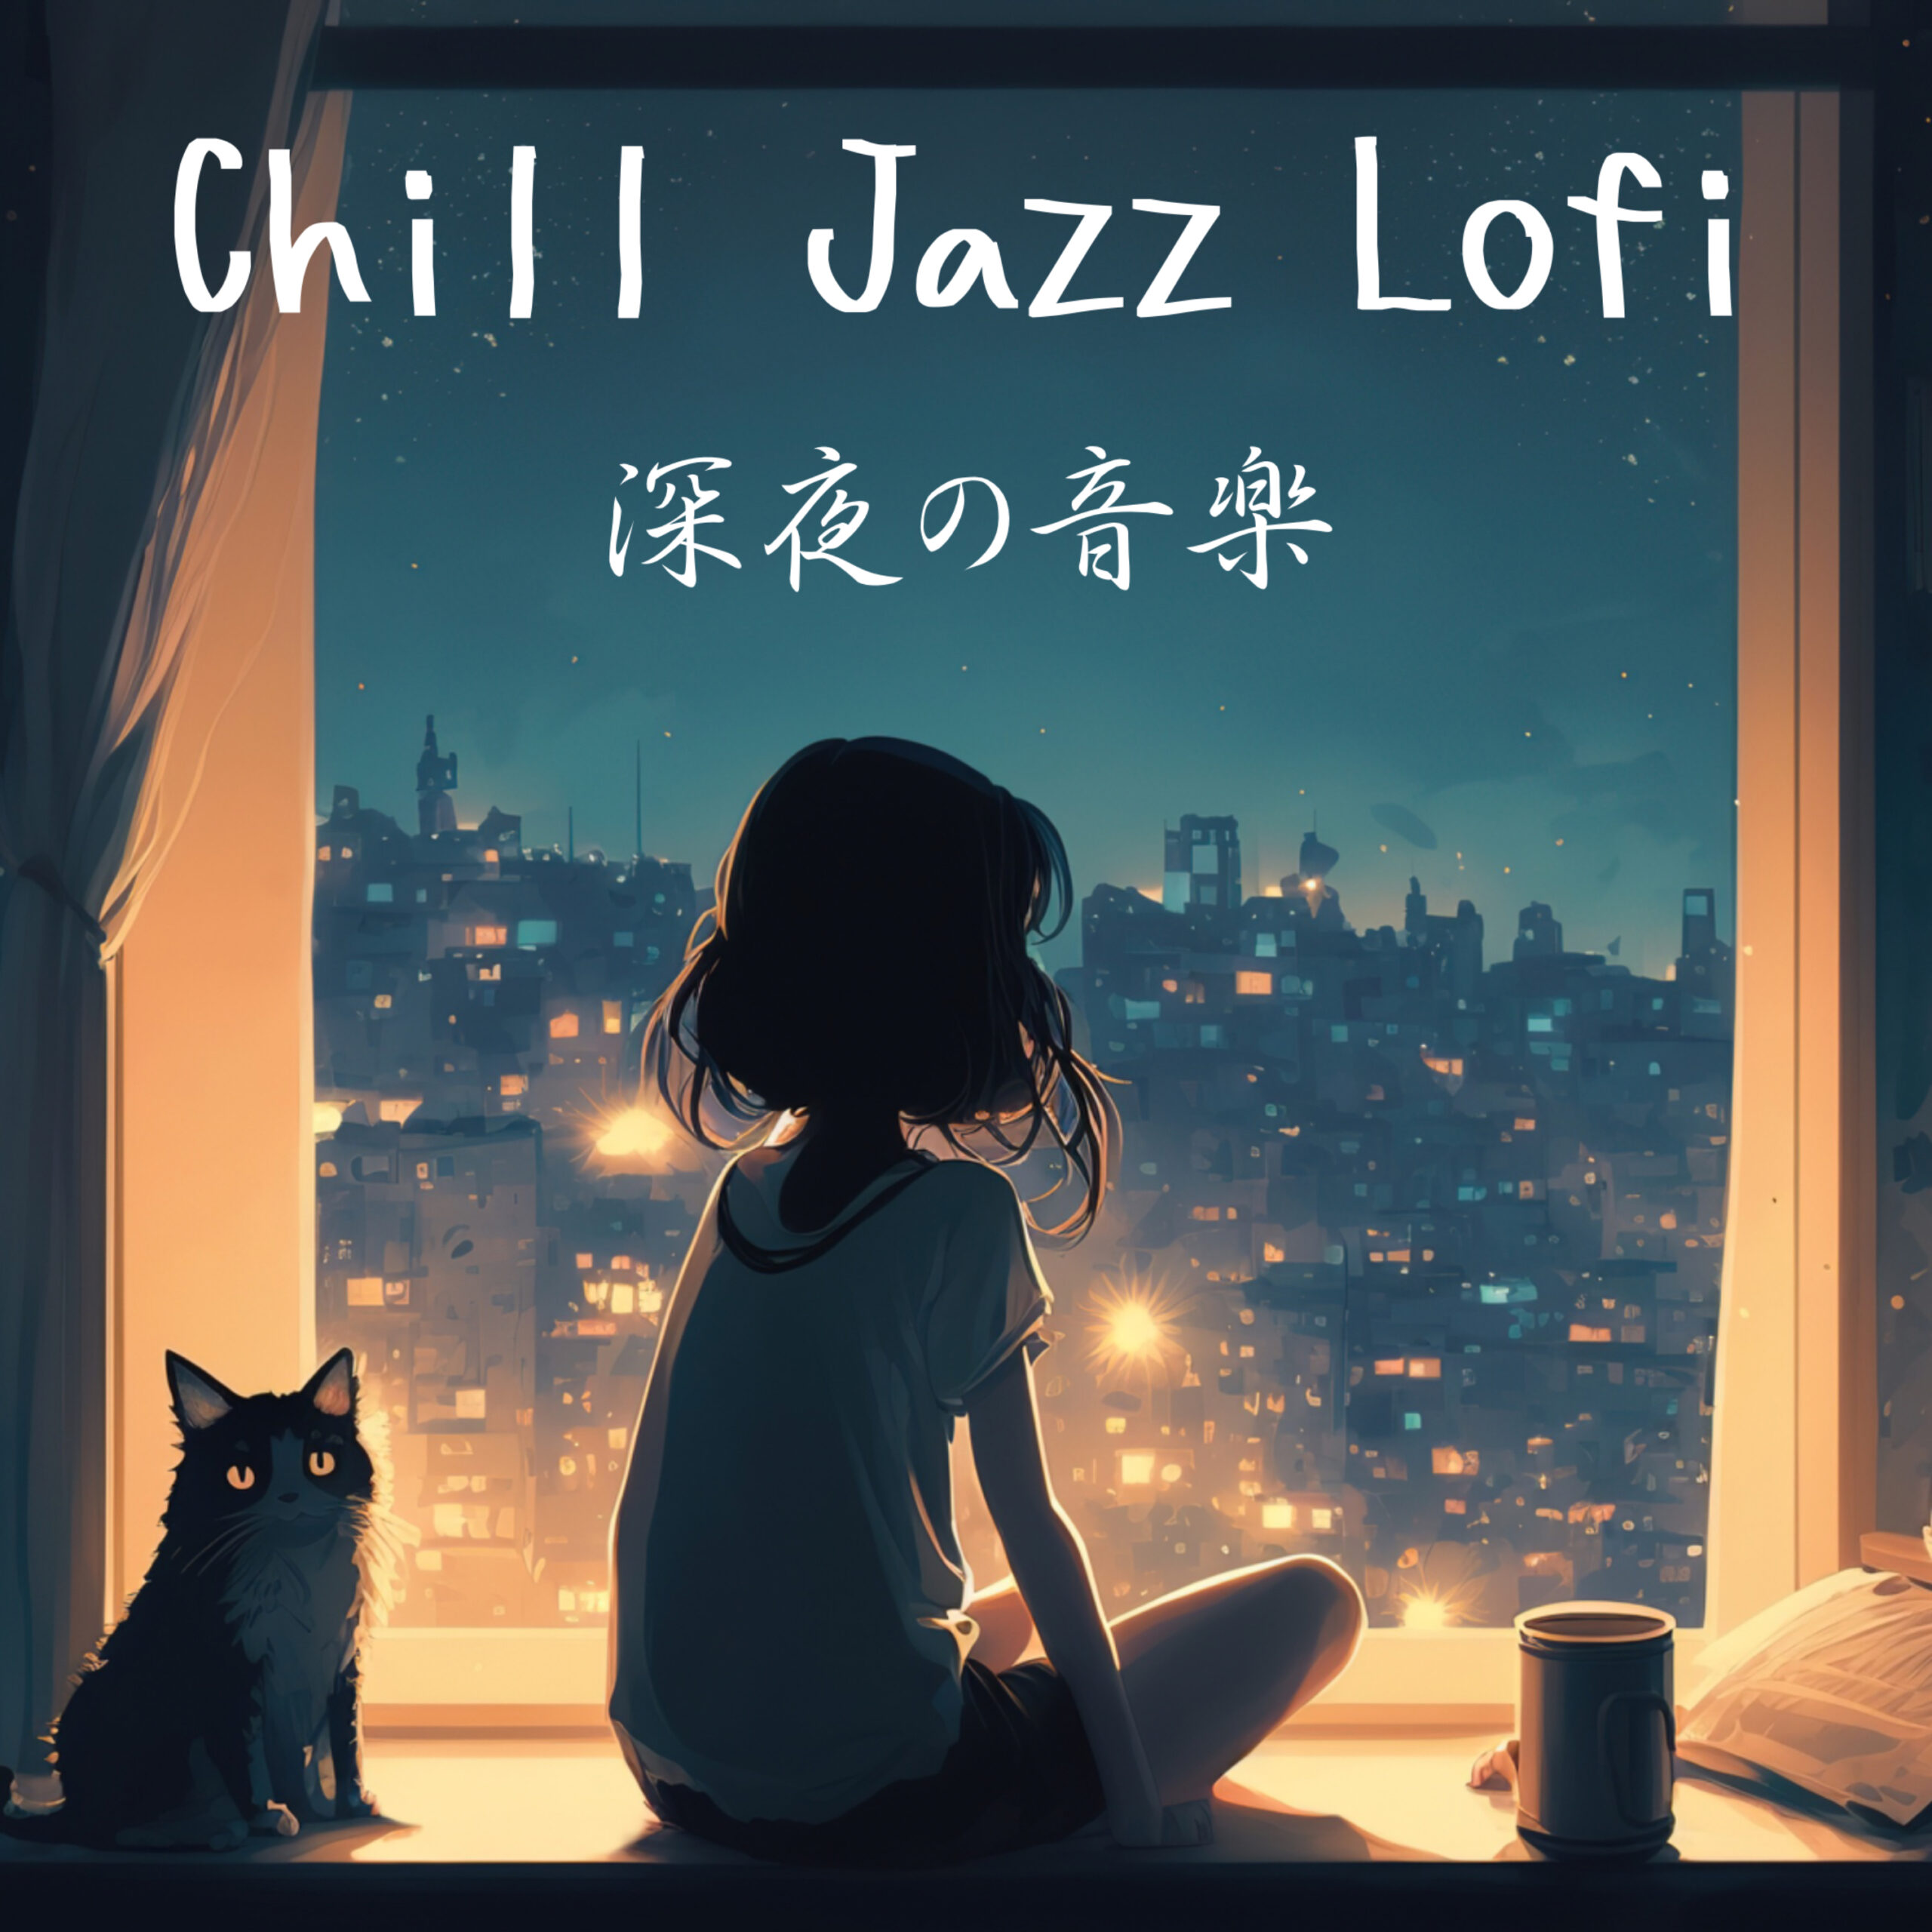 Chill Jazz Lofi 深夜の音楽 作業用、睡眠用、リラックスした大人の夜のひととき